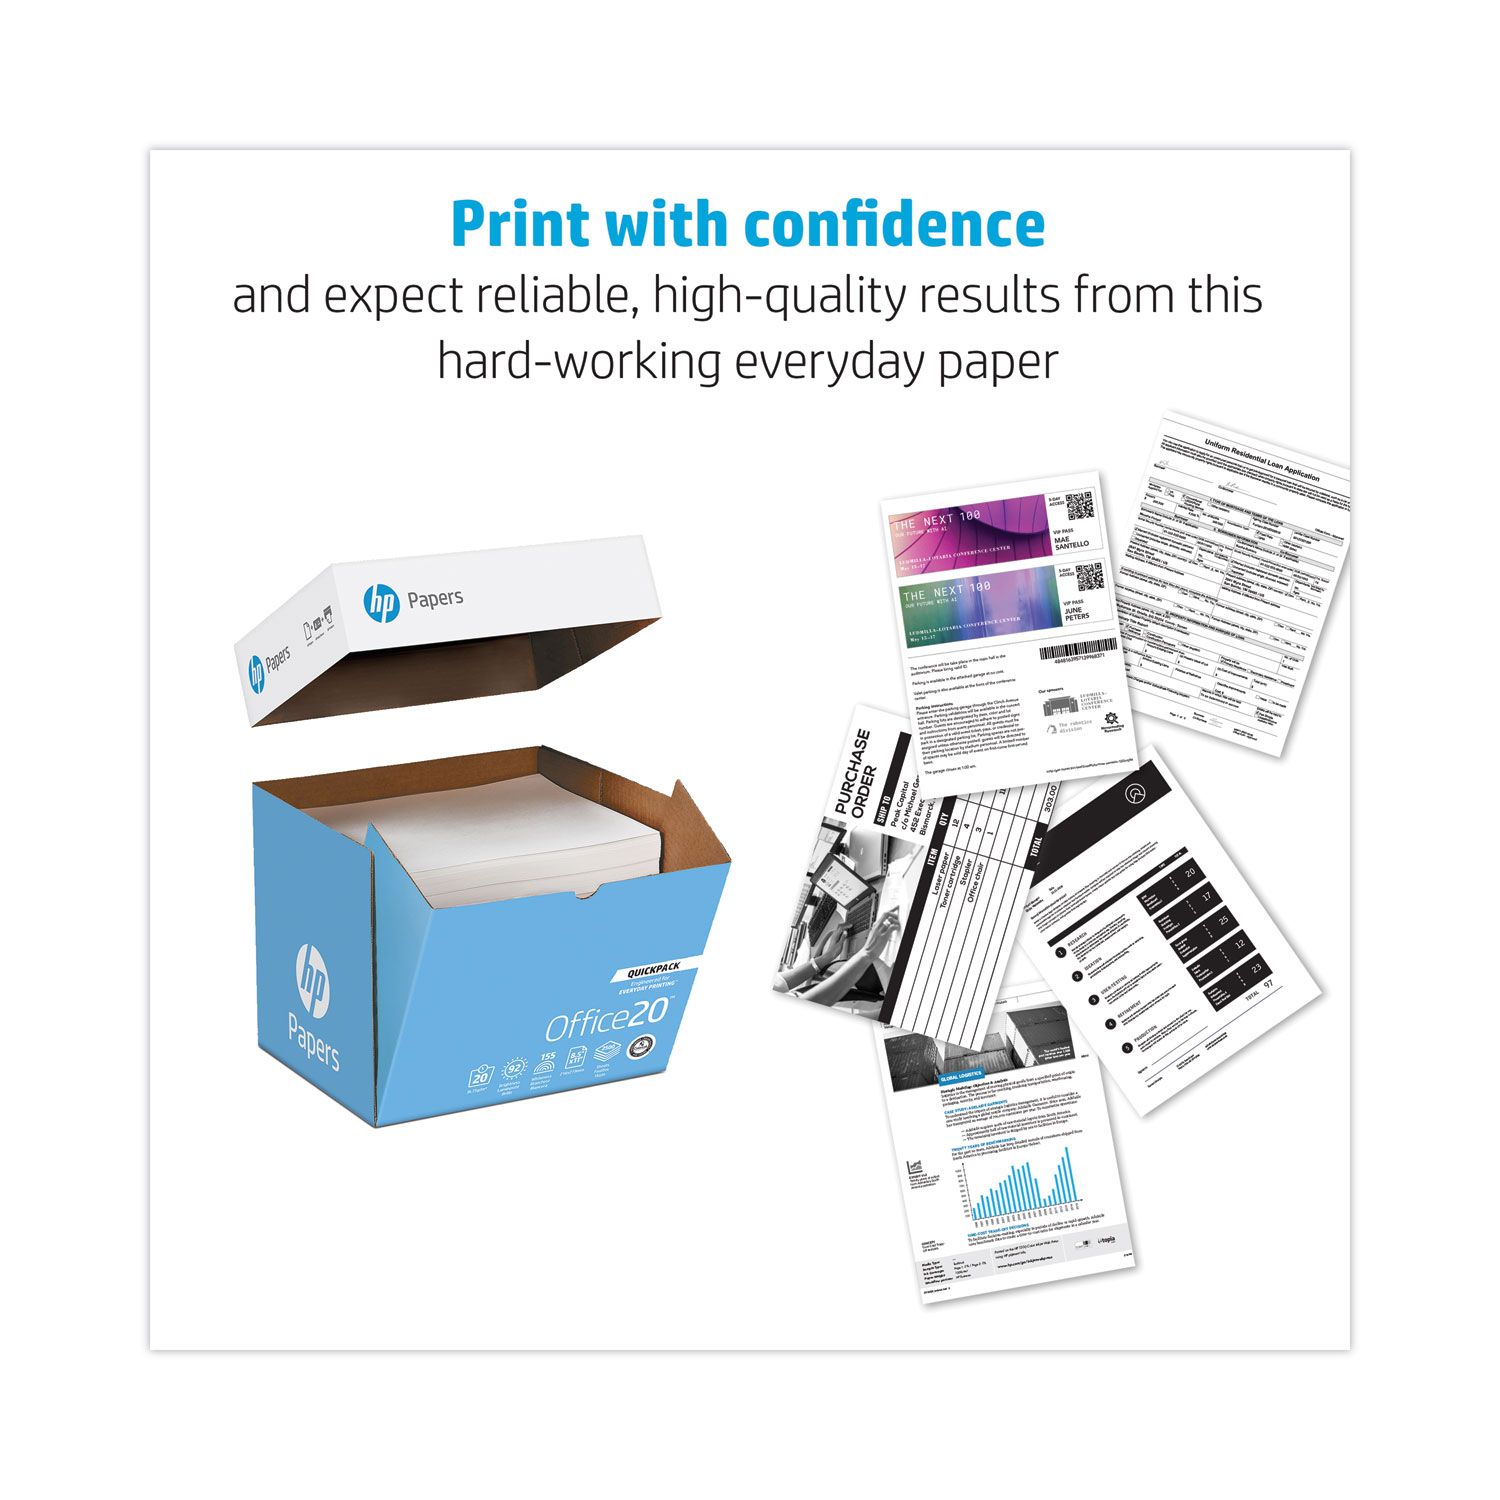 Copy Paper Convenience Carton, 92 Bright, 20 lb Bond Weight, 8.5 x